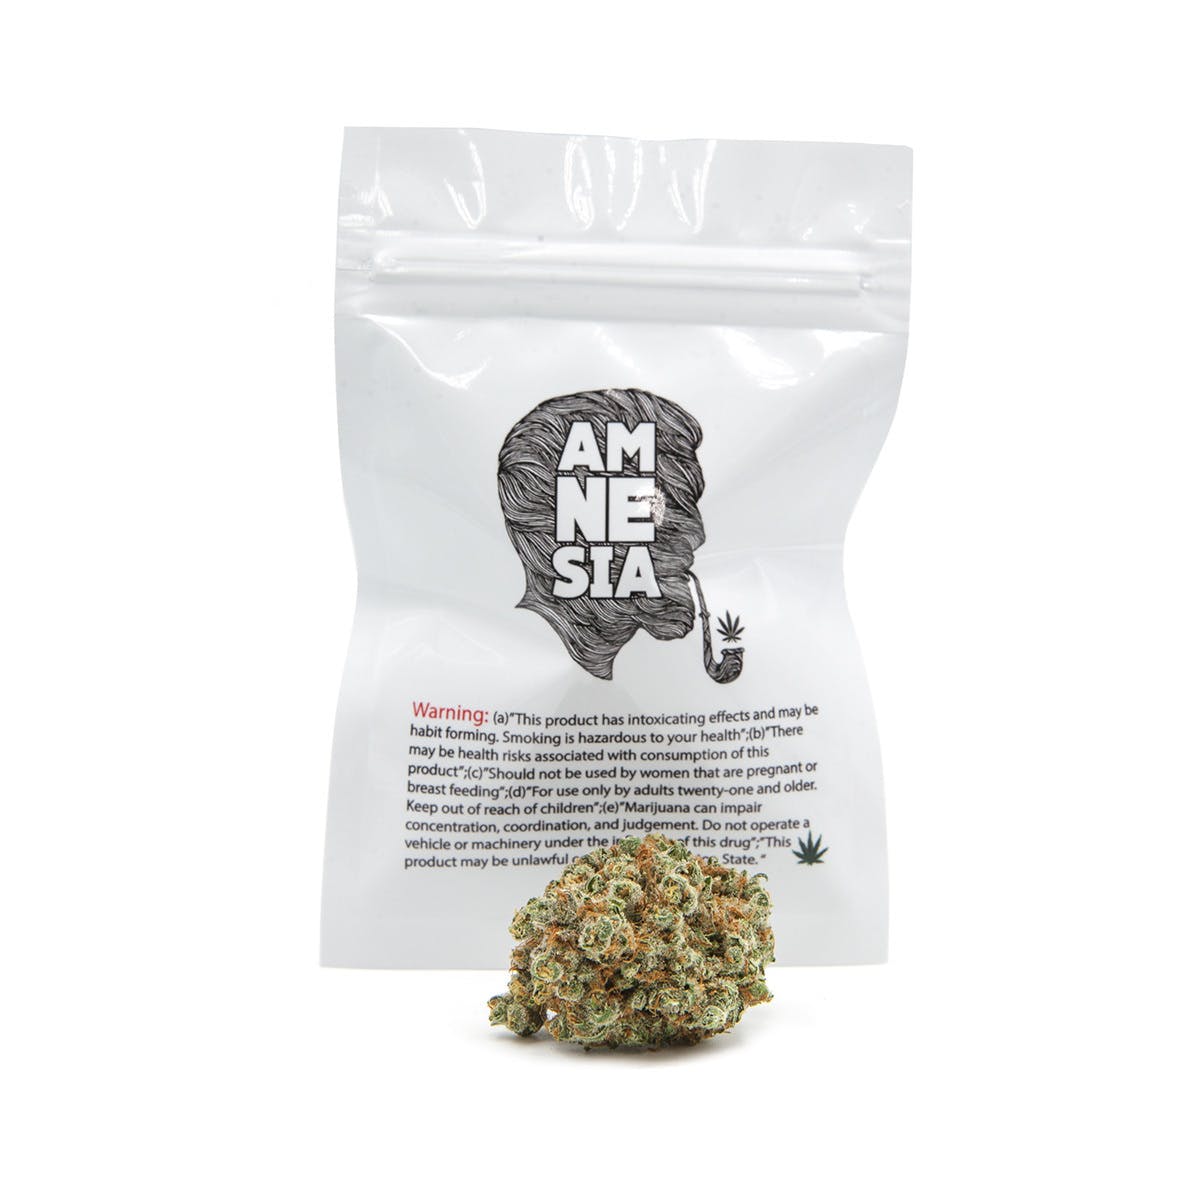 marijuana-dispensaries-kure-cannabis-in-santa-fe-amnesia